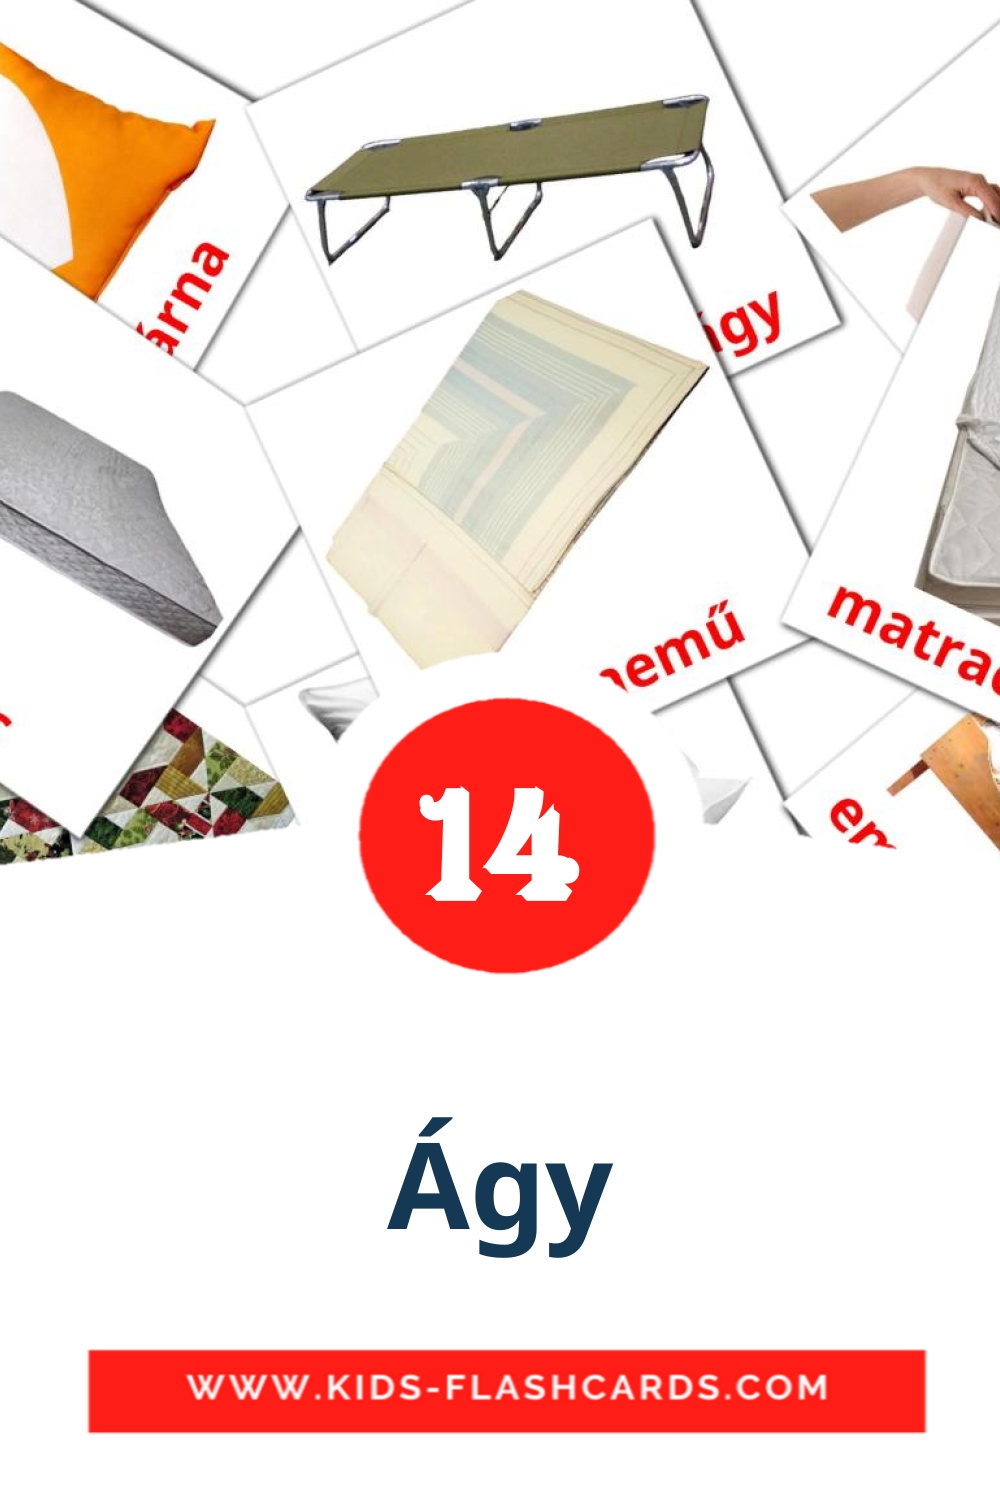 14 carte illustrate di Ágy per la scuola materna in ungherese